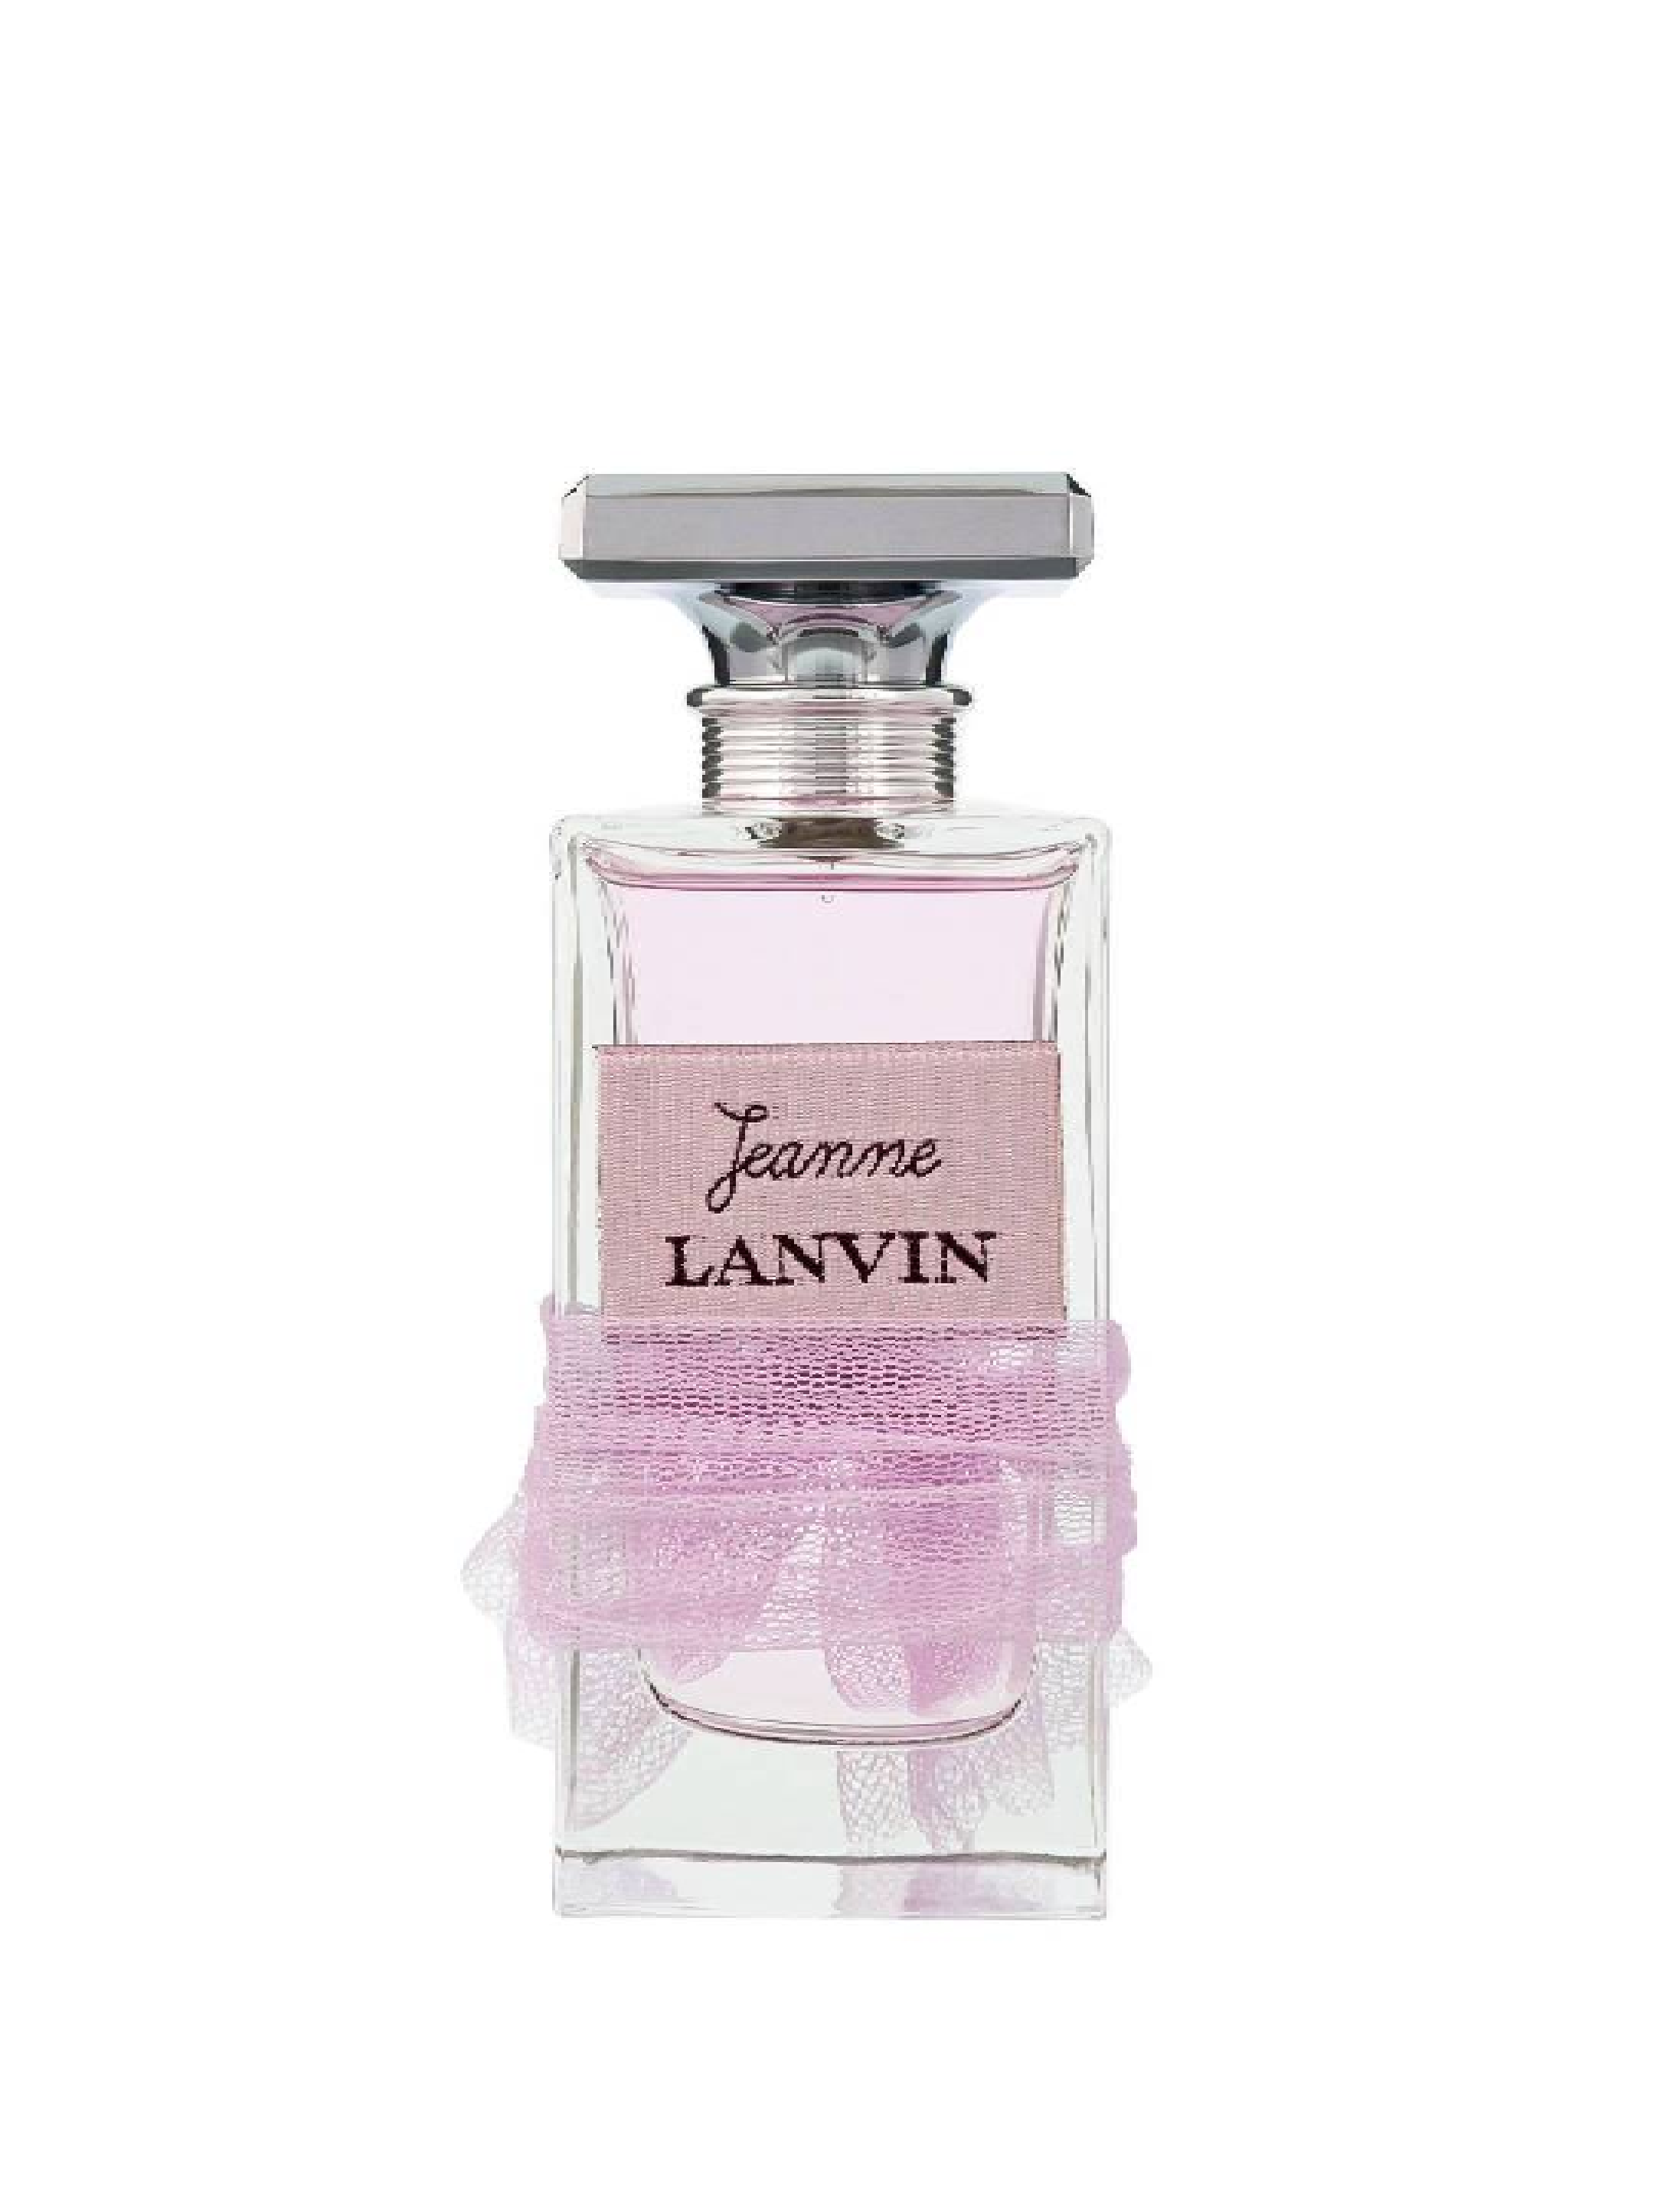 Lanvin Beauty Eau de parfum, 100 ml - buy for 41800 KZT in official Viled online store, art. JL002A01